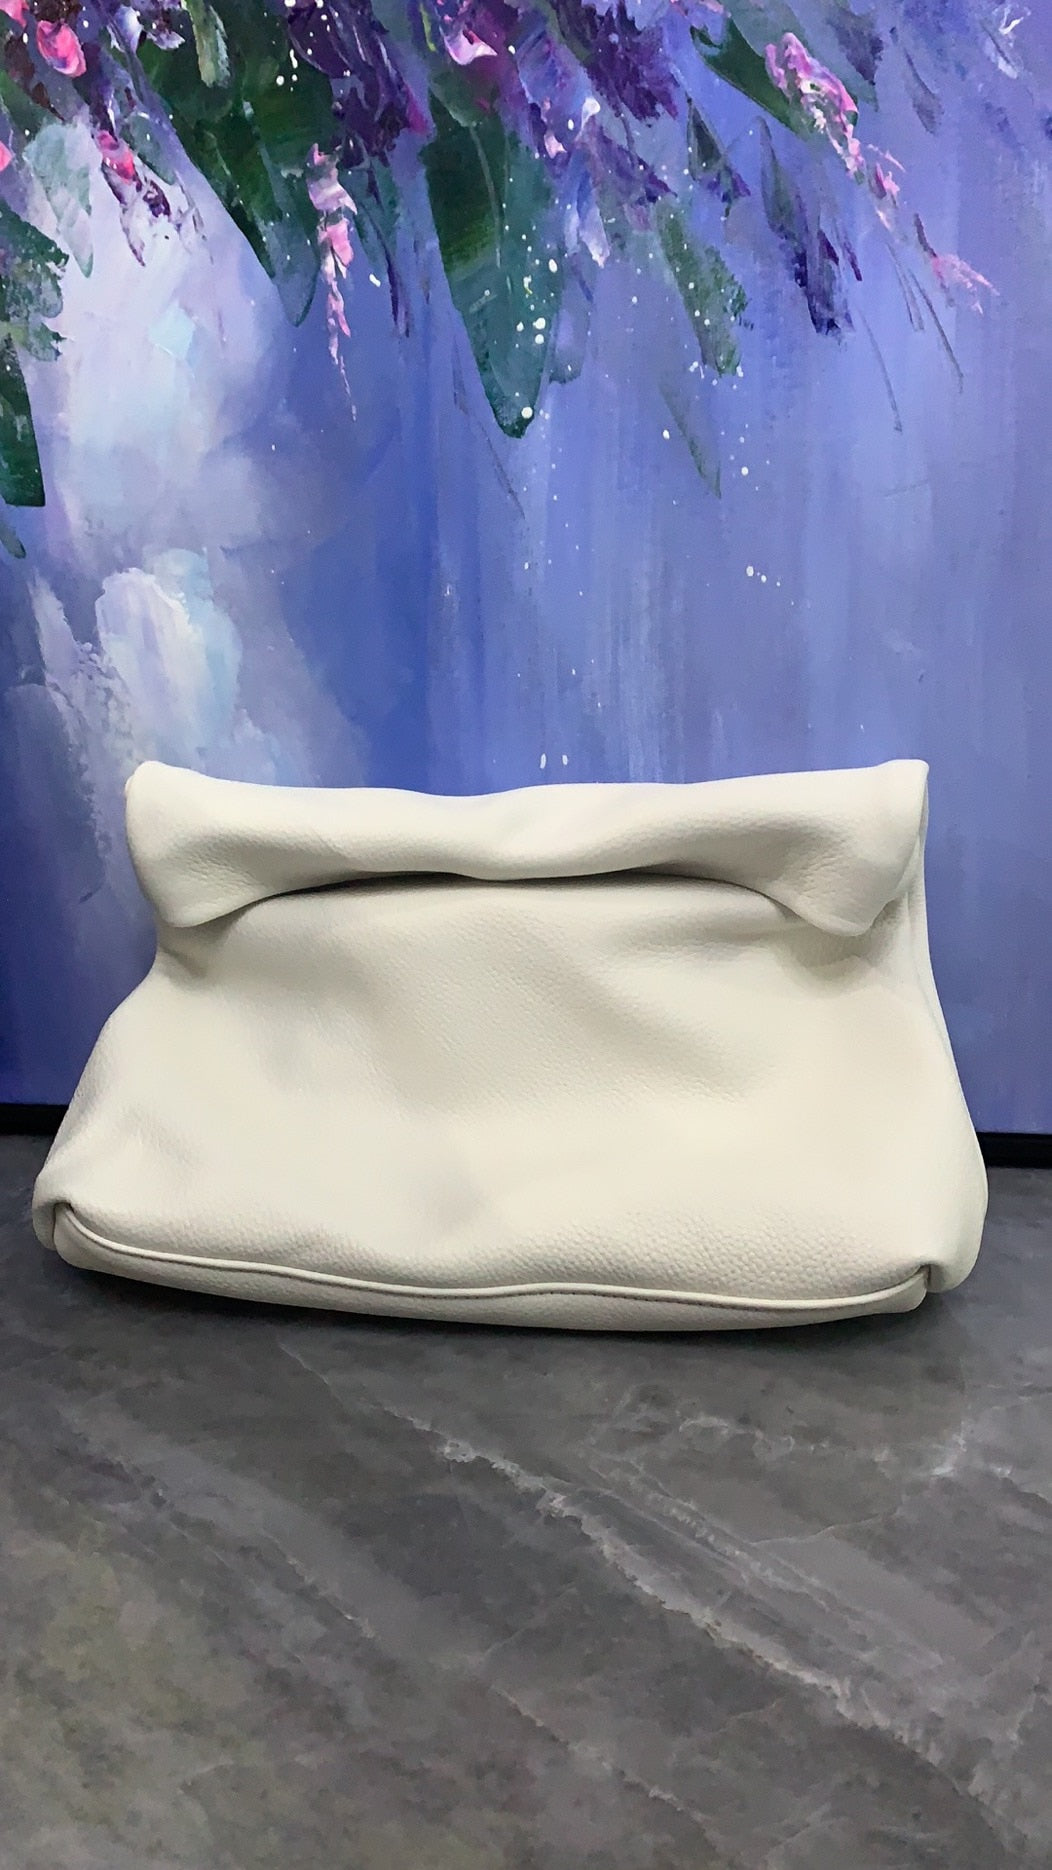 Genuine Leather Bags Design Handbags New Clutch bag Clutch bag Evening bag  Phone Pocket Women&#39;s Handbag High Quality